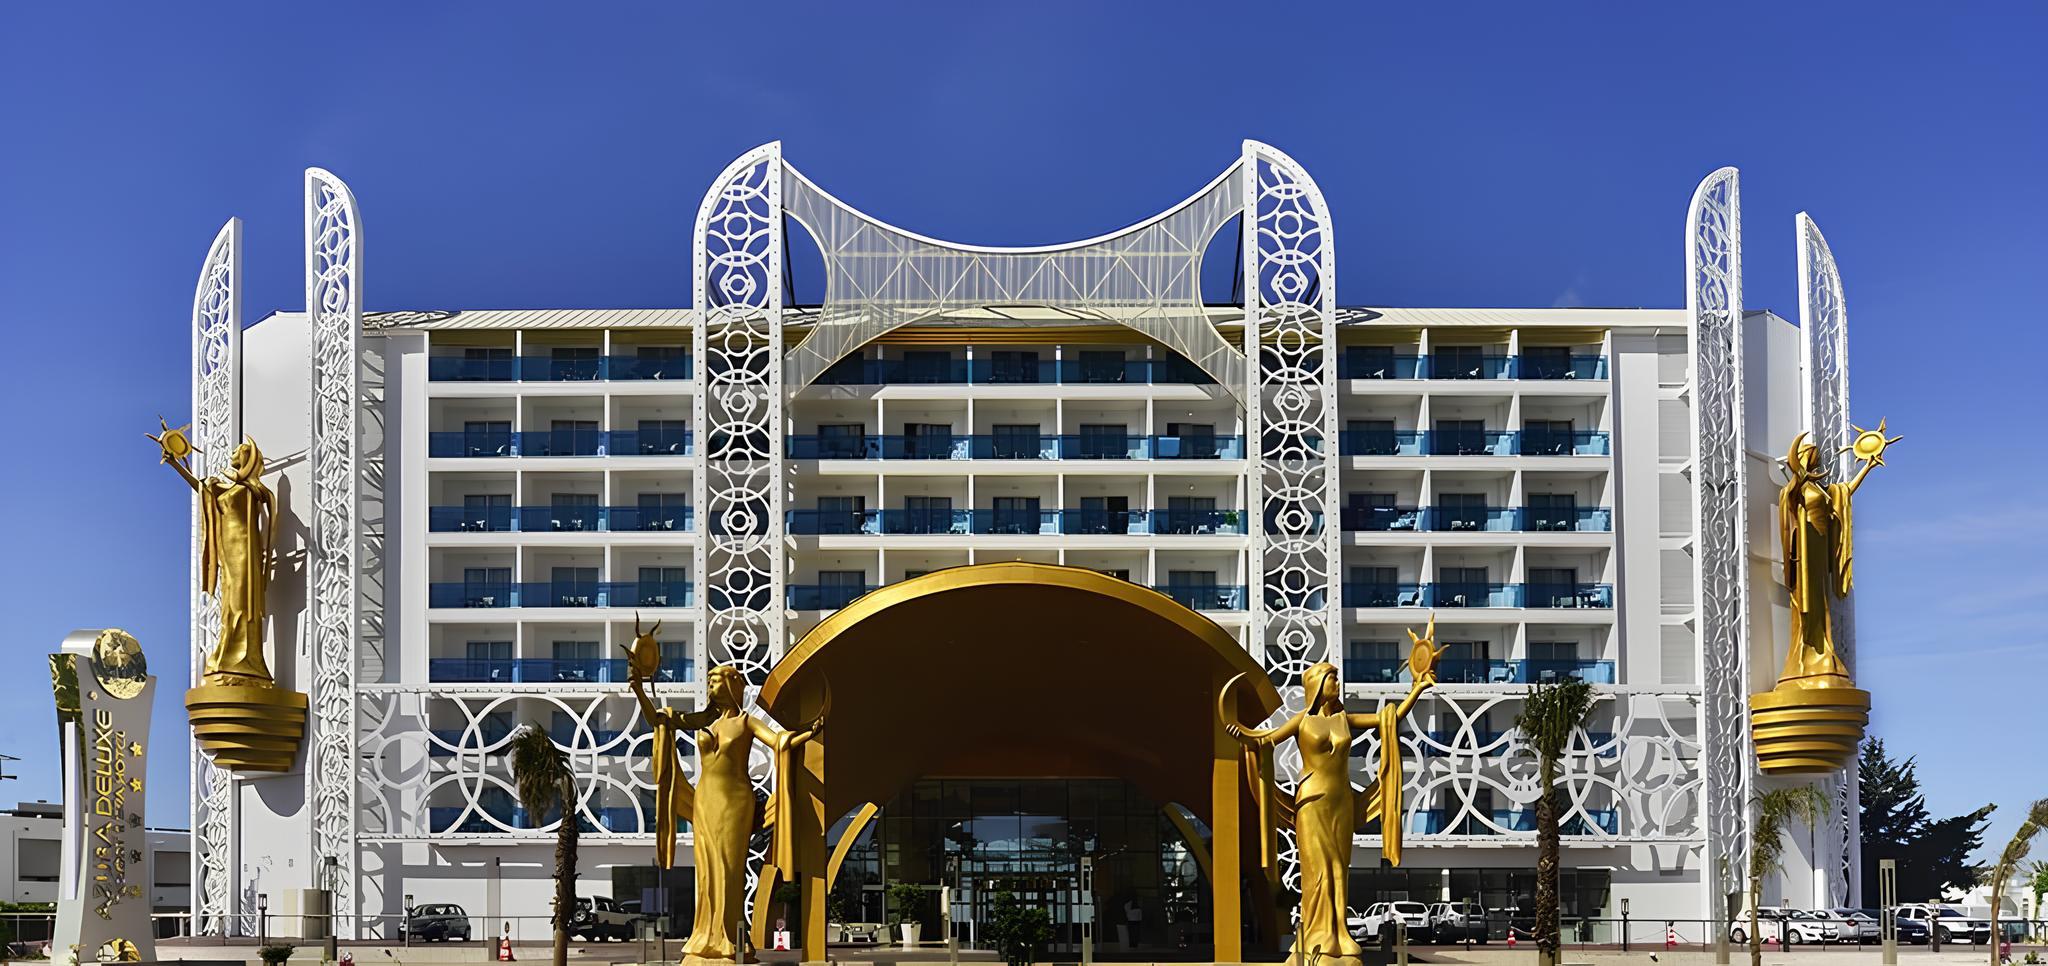 Azura Deluxe Resort & Spa Hotel 5*